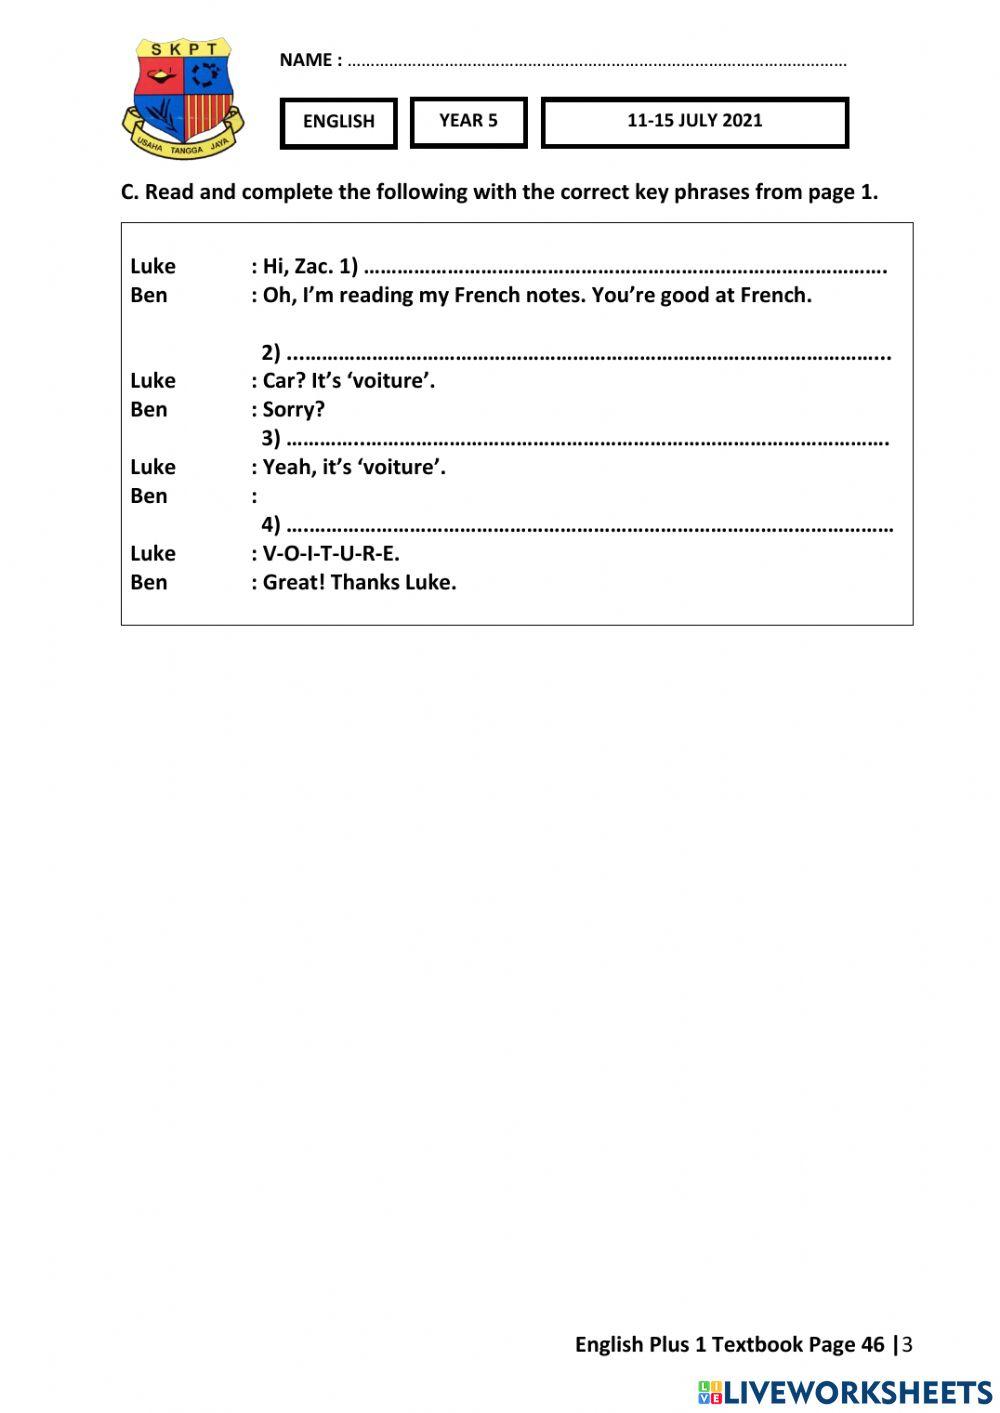 ENG Y5 Week 23 (11-15 JULY) Worksheets 2 Textbook page 48